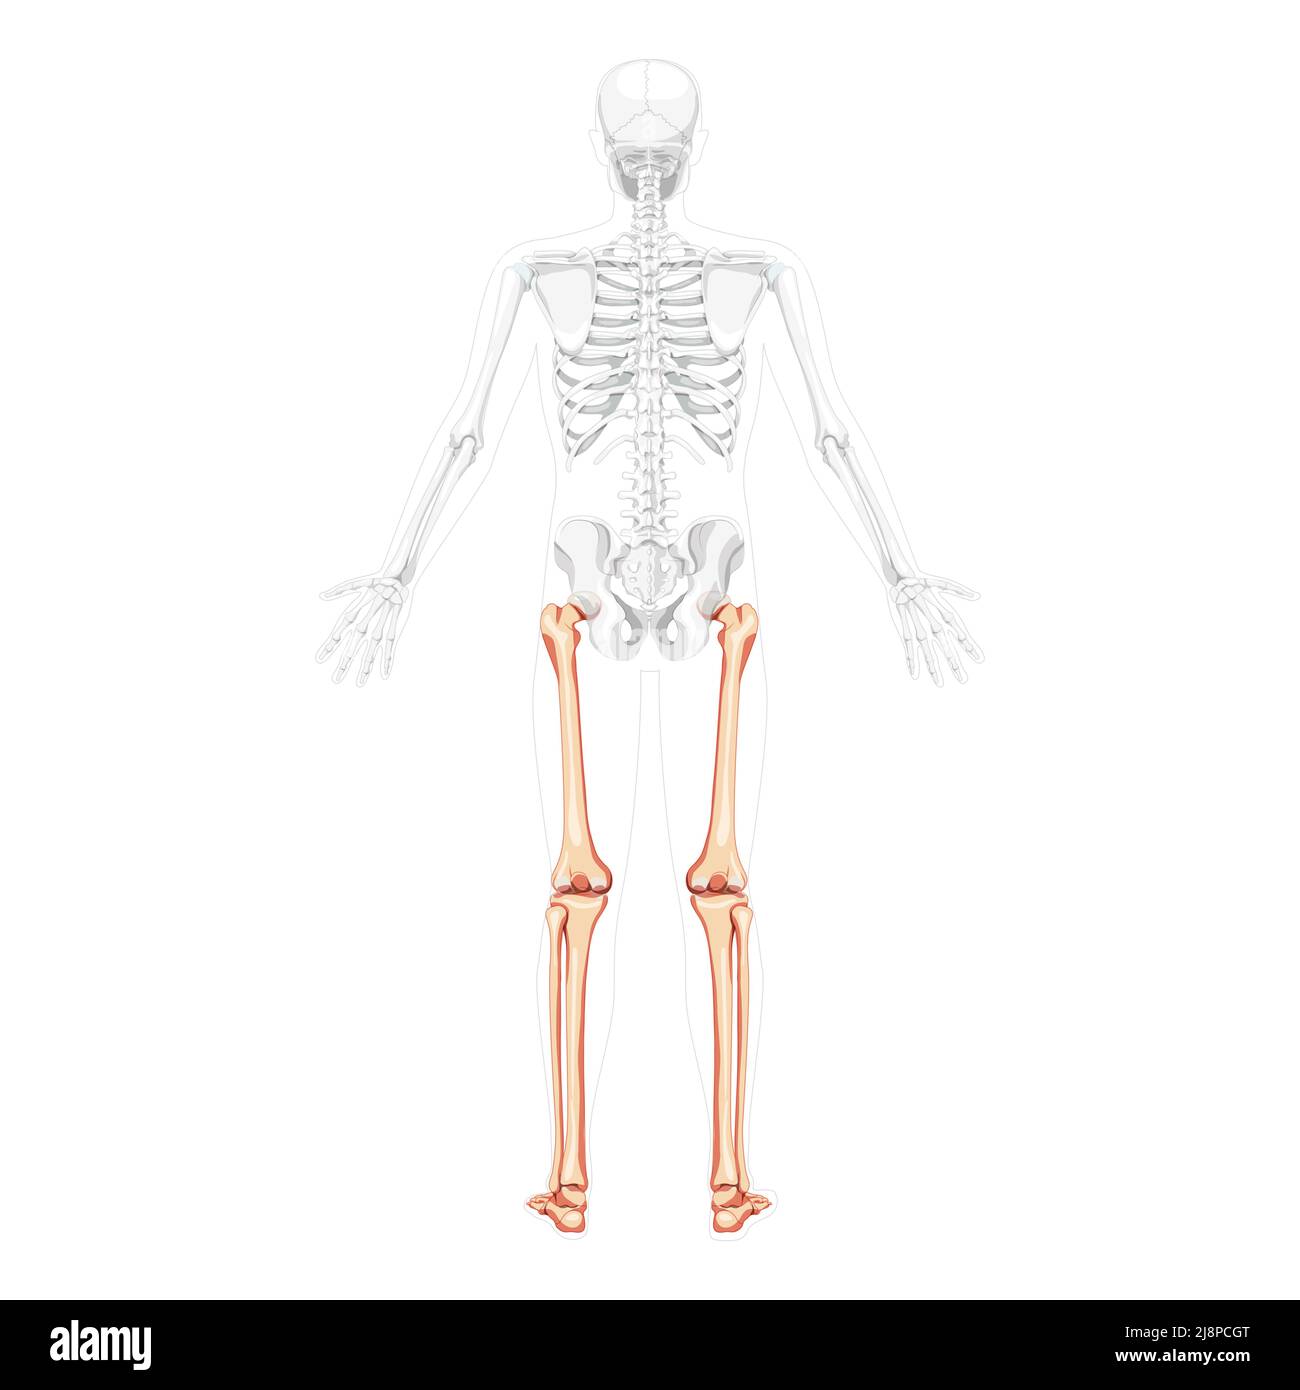 Скелет человека бедро